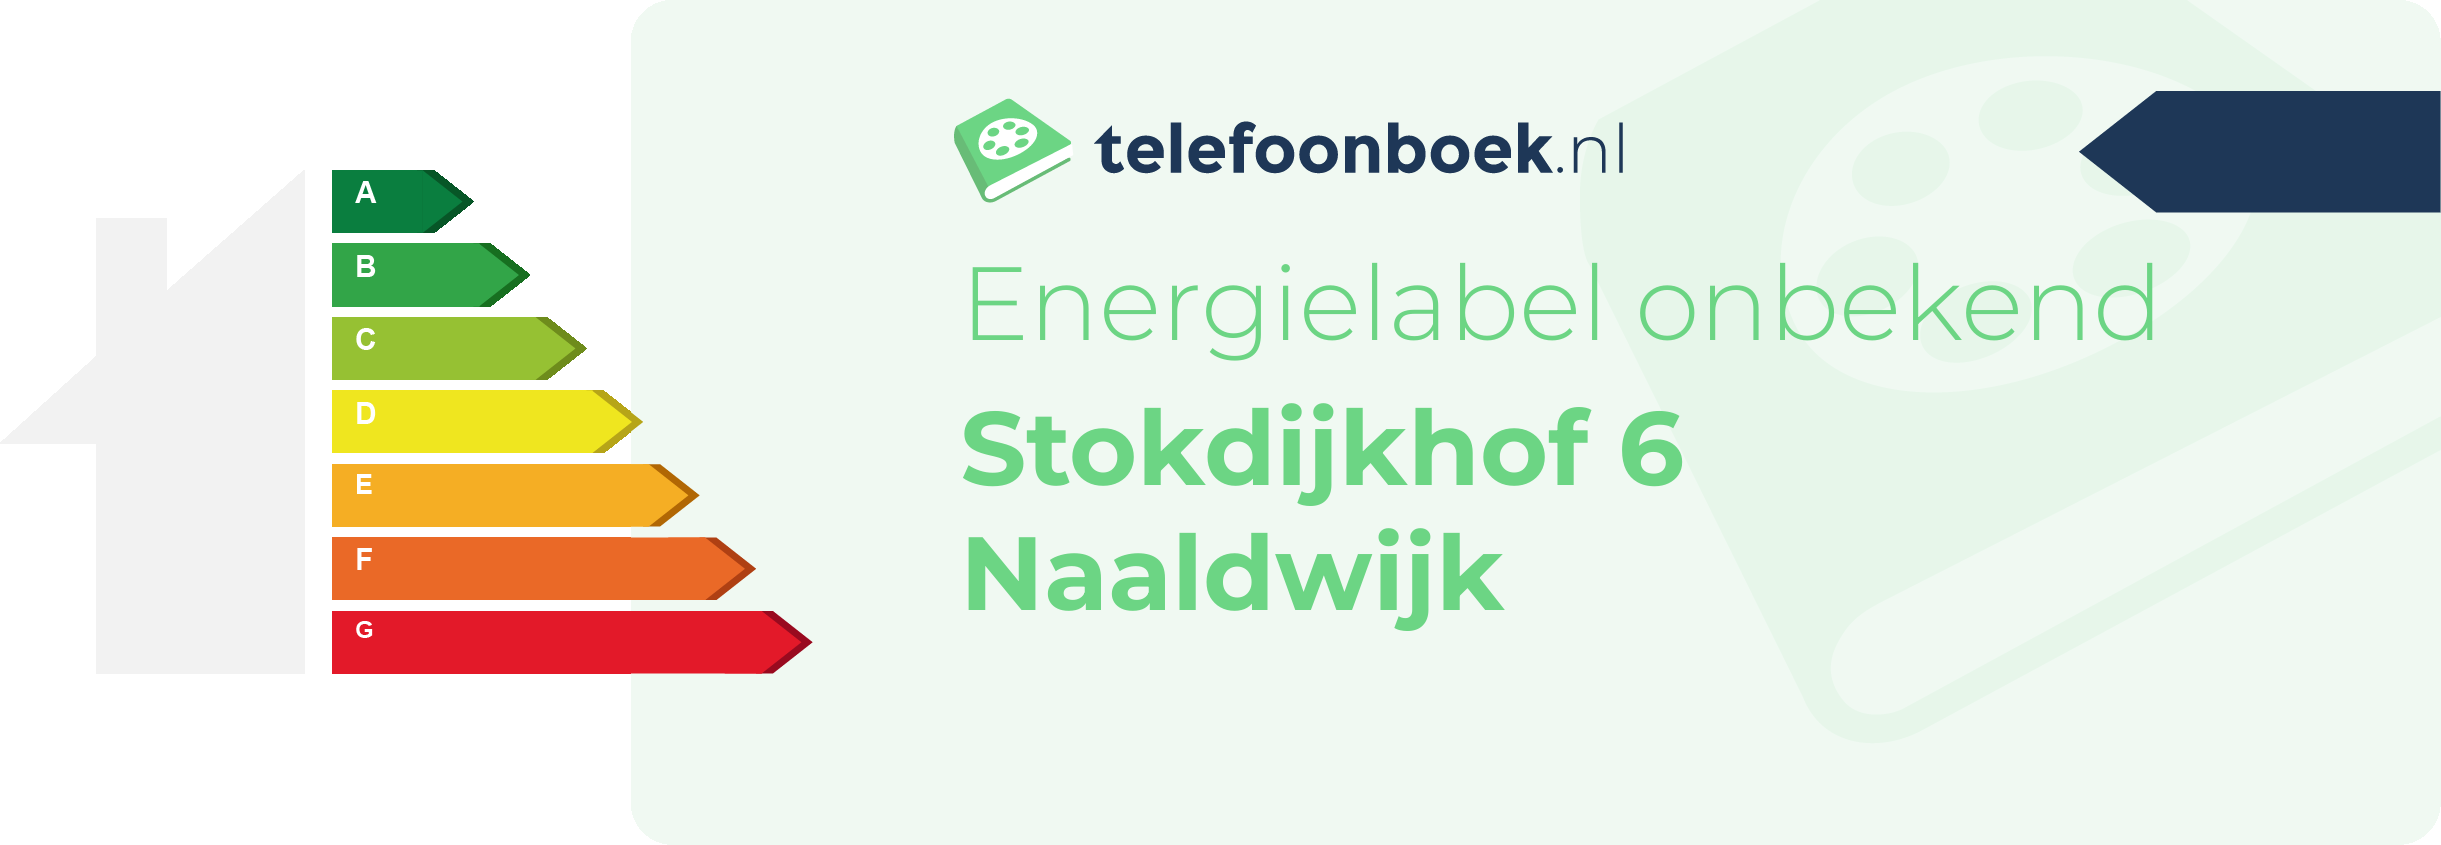 Energielabel Stokdijkhof 6 Naaldwijk